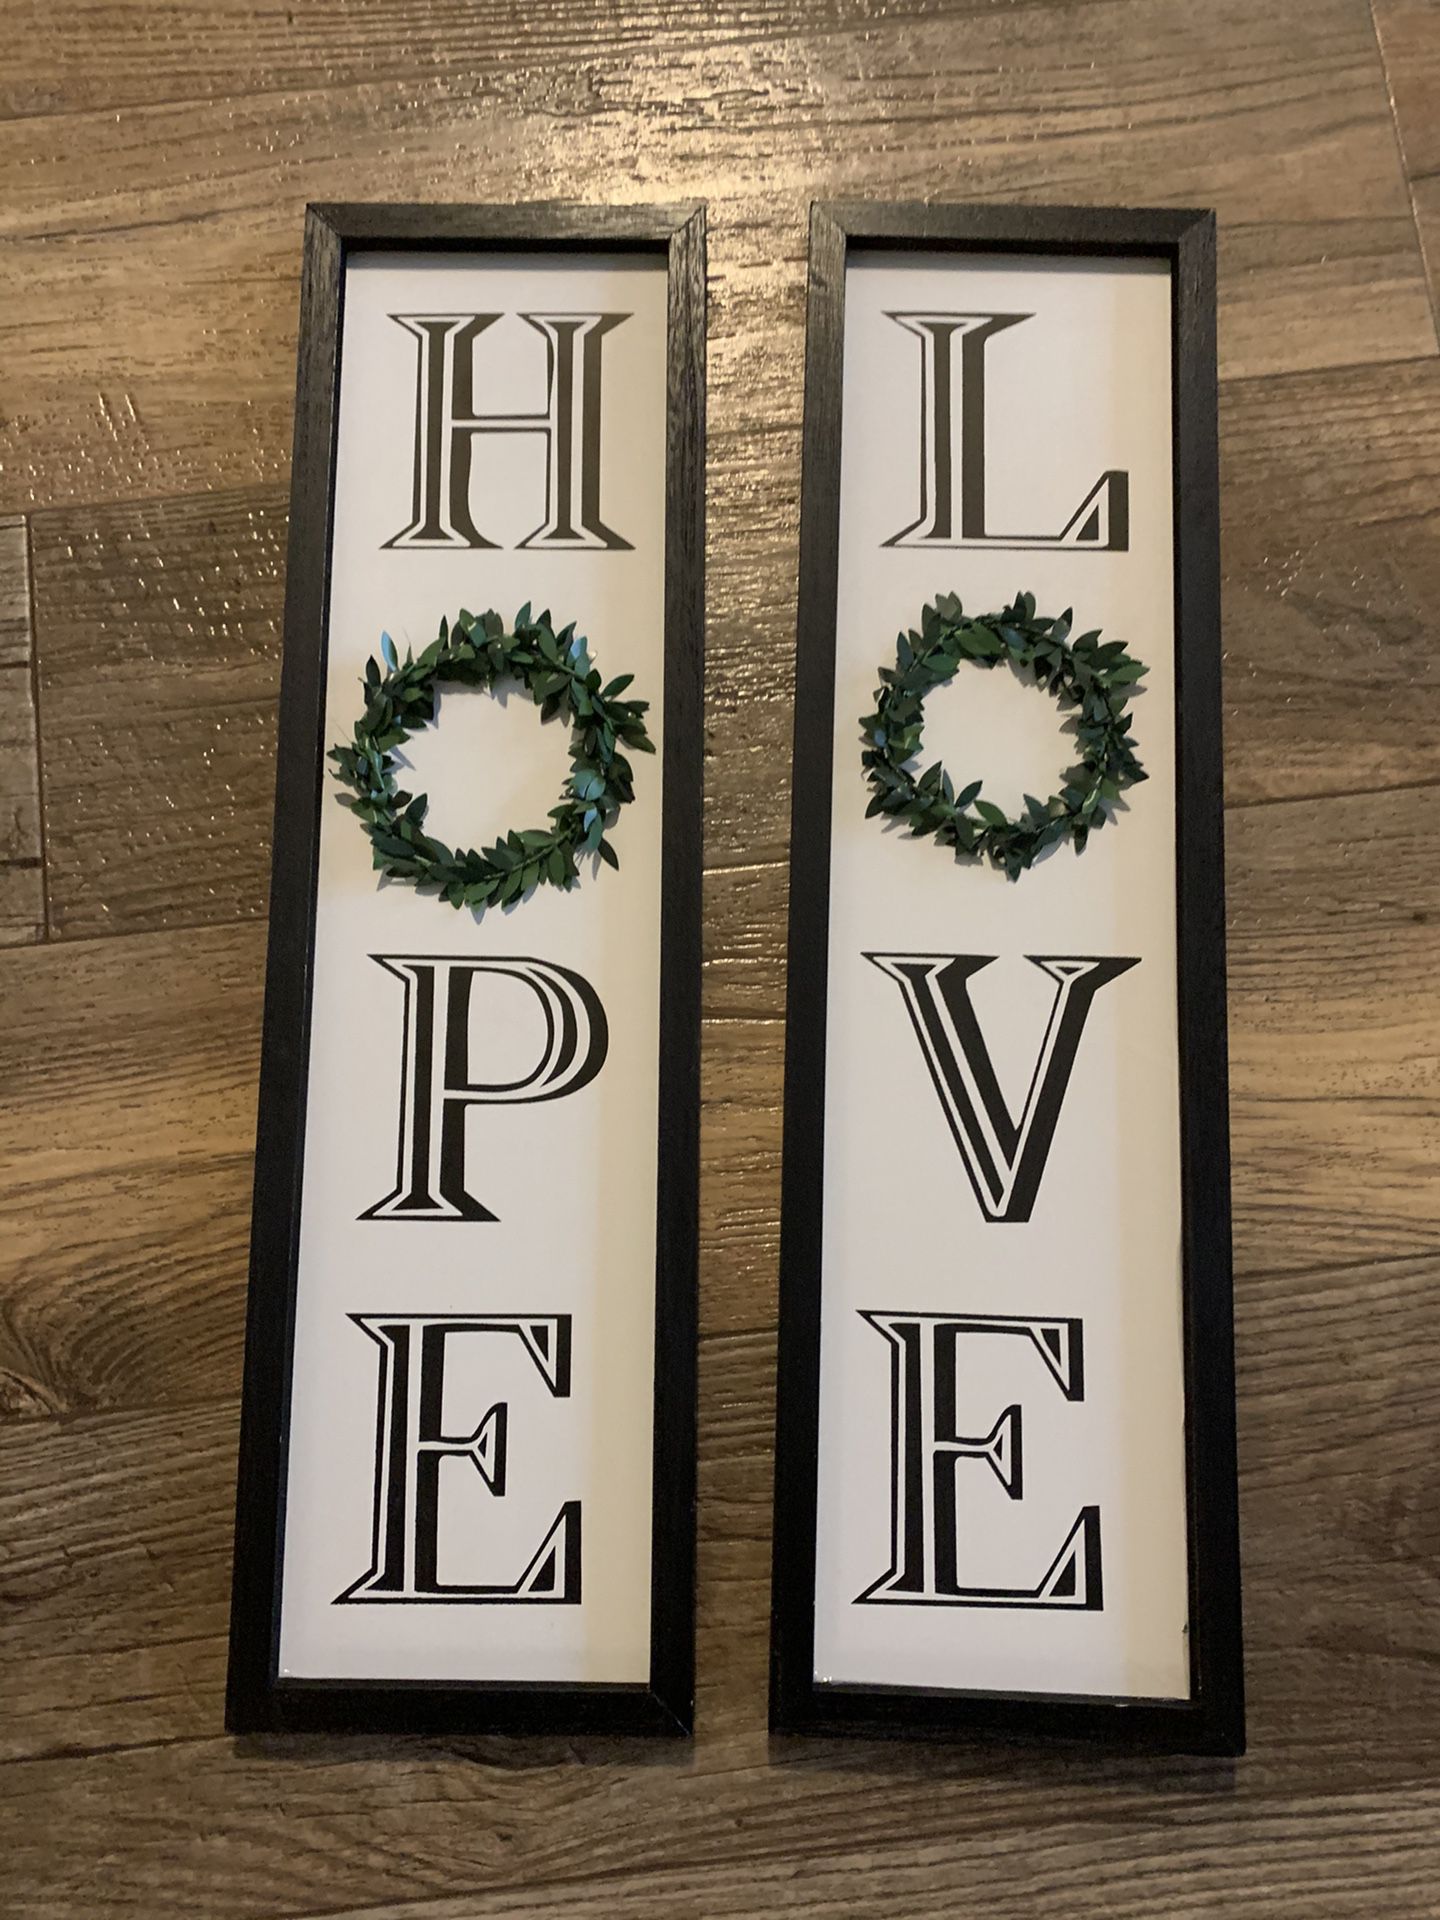 Hope & Love decor frames